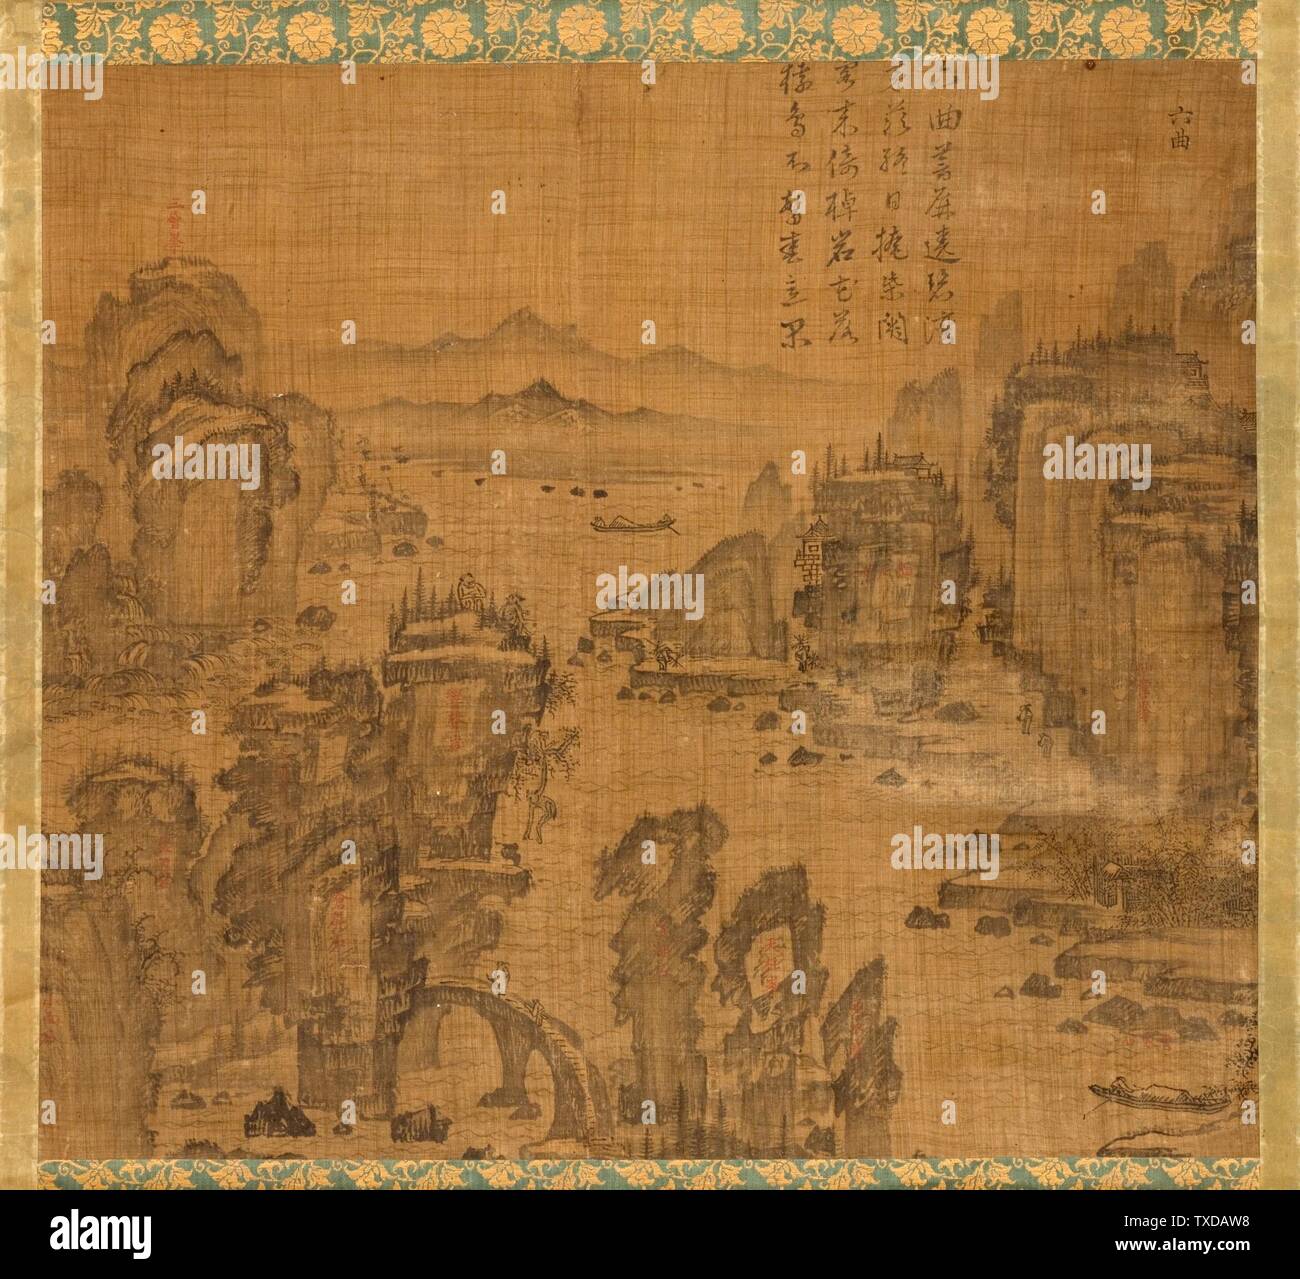 Die sechste der Neun Krümmungen am Berg Wuyi, China (Bild 1 von 5); Korea, Koreanisch, Joseon-Dynastie (1392-1910), Gemälde Aus dem 17. Jahrhundert, Hängende Schriftrolle, Tinte auf Ramie oder Hanf Bild: 20 3/4 x 23 1/8 Zoll (52,71 x 58,74 cm); Halterung: 48 3/4 x 25 Zoll (123,83 x 63,5 cm); Rolle: 27 1/4 Zoll (69,22 cm) Mit Museumsfonds (M.2000.15.20) Koreanische Kunst; Datum des 17. Jahrhunderts QS:P571,+1650-00-00T00:00:00Z/7; Stockfoto